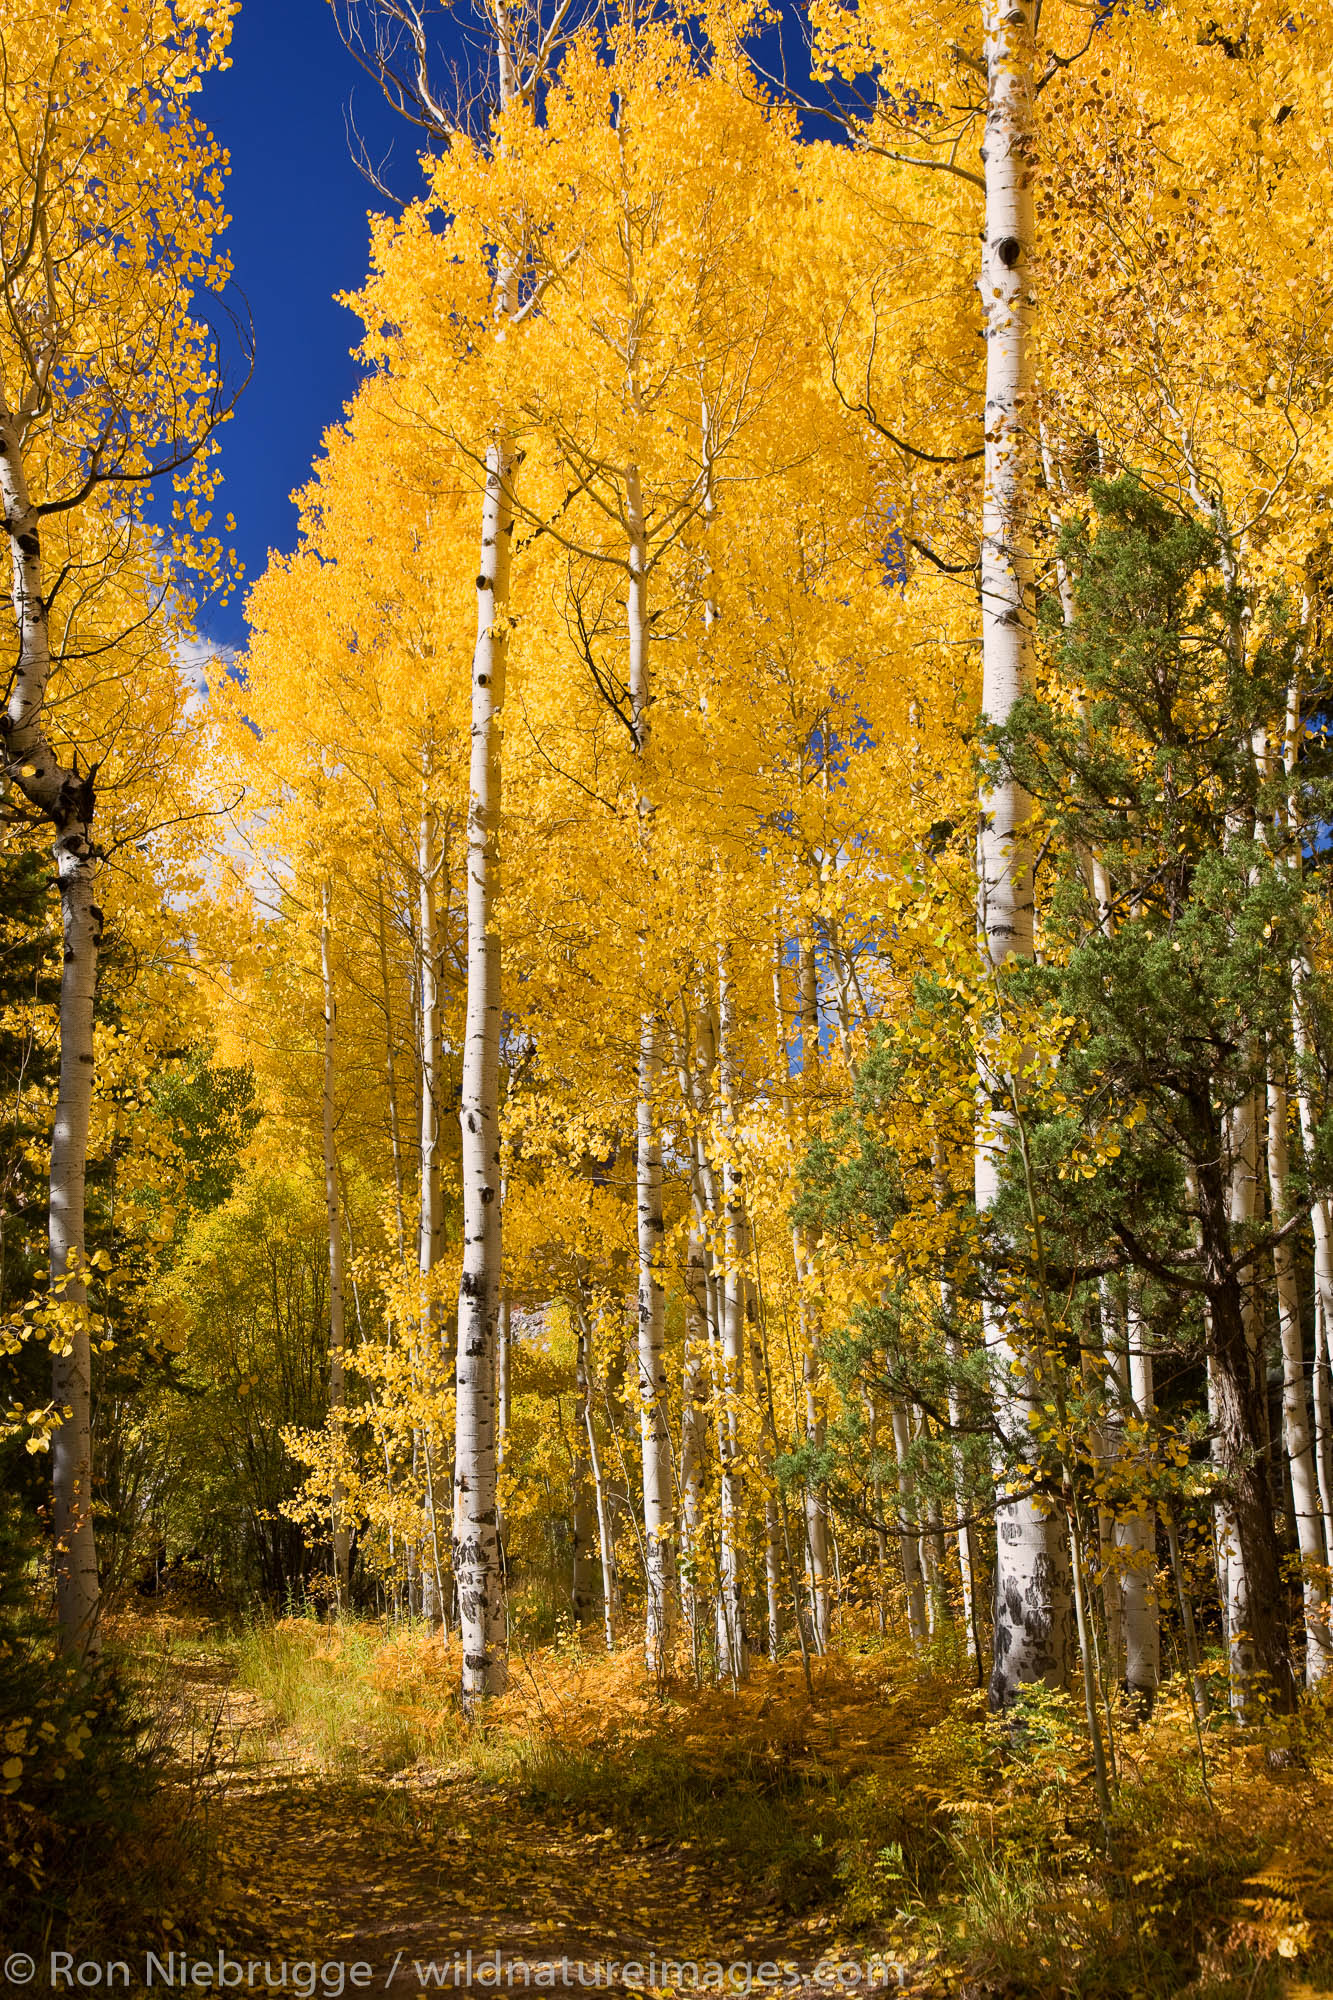 Autumn colors in the San Juan Mountains, near Ouray, Colorado.